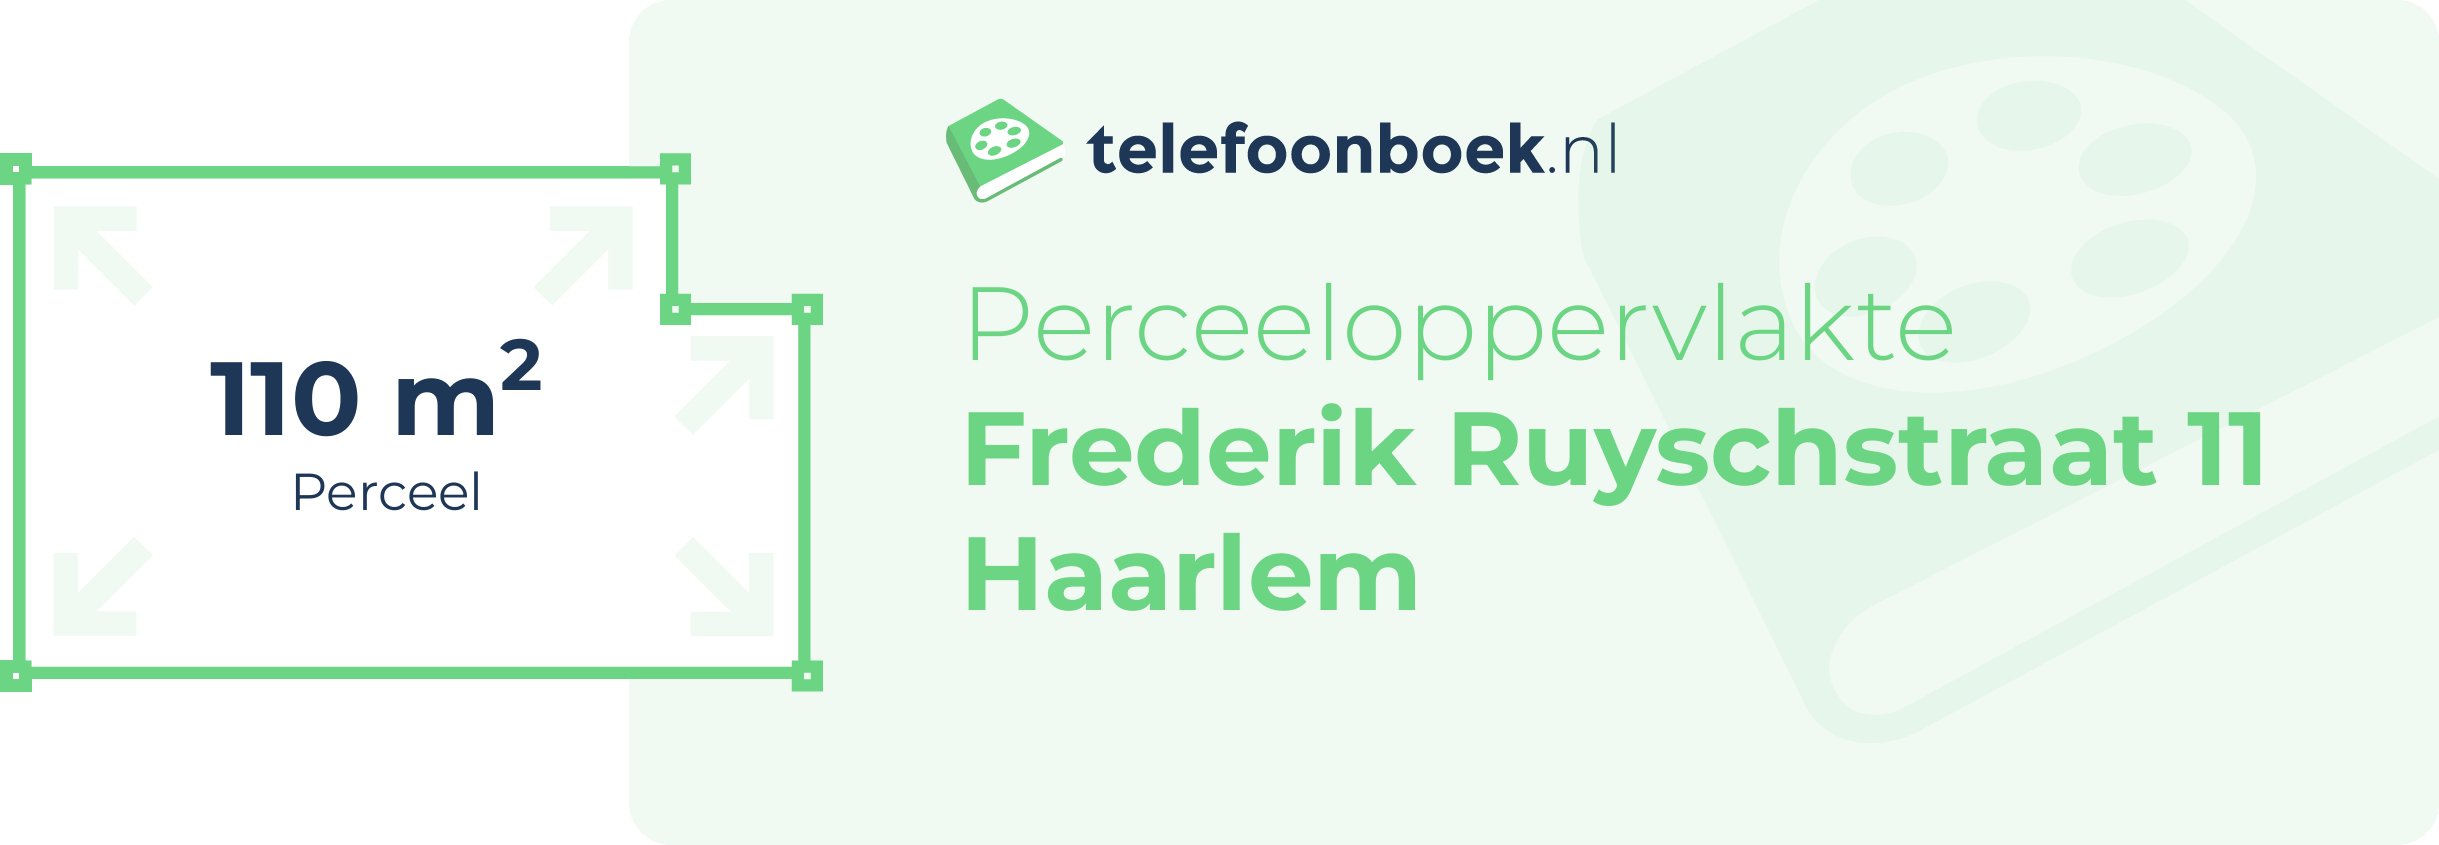 Perceeloppervlakte Frederik Ruyschstraat 11 Haarlem